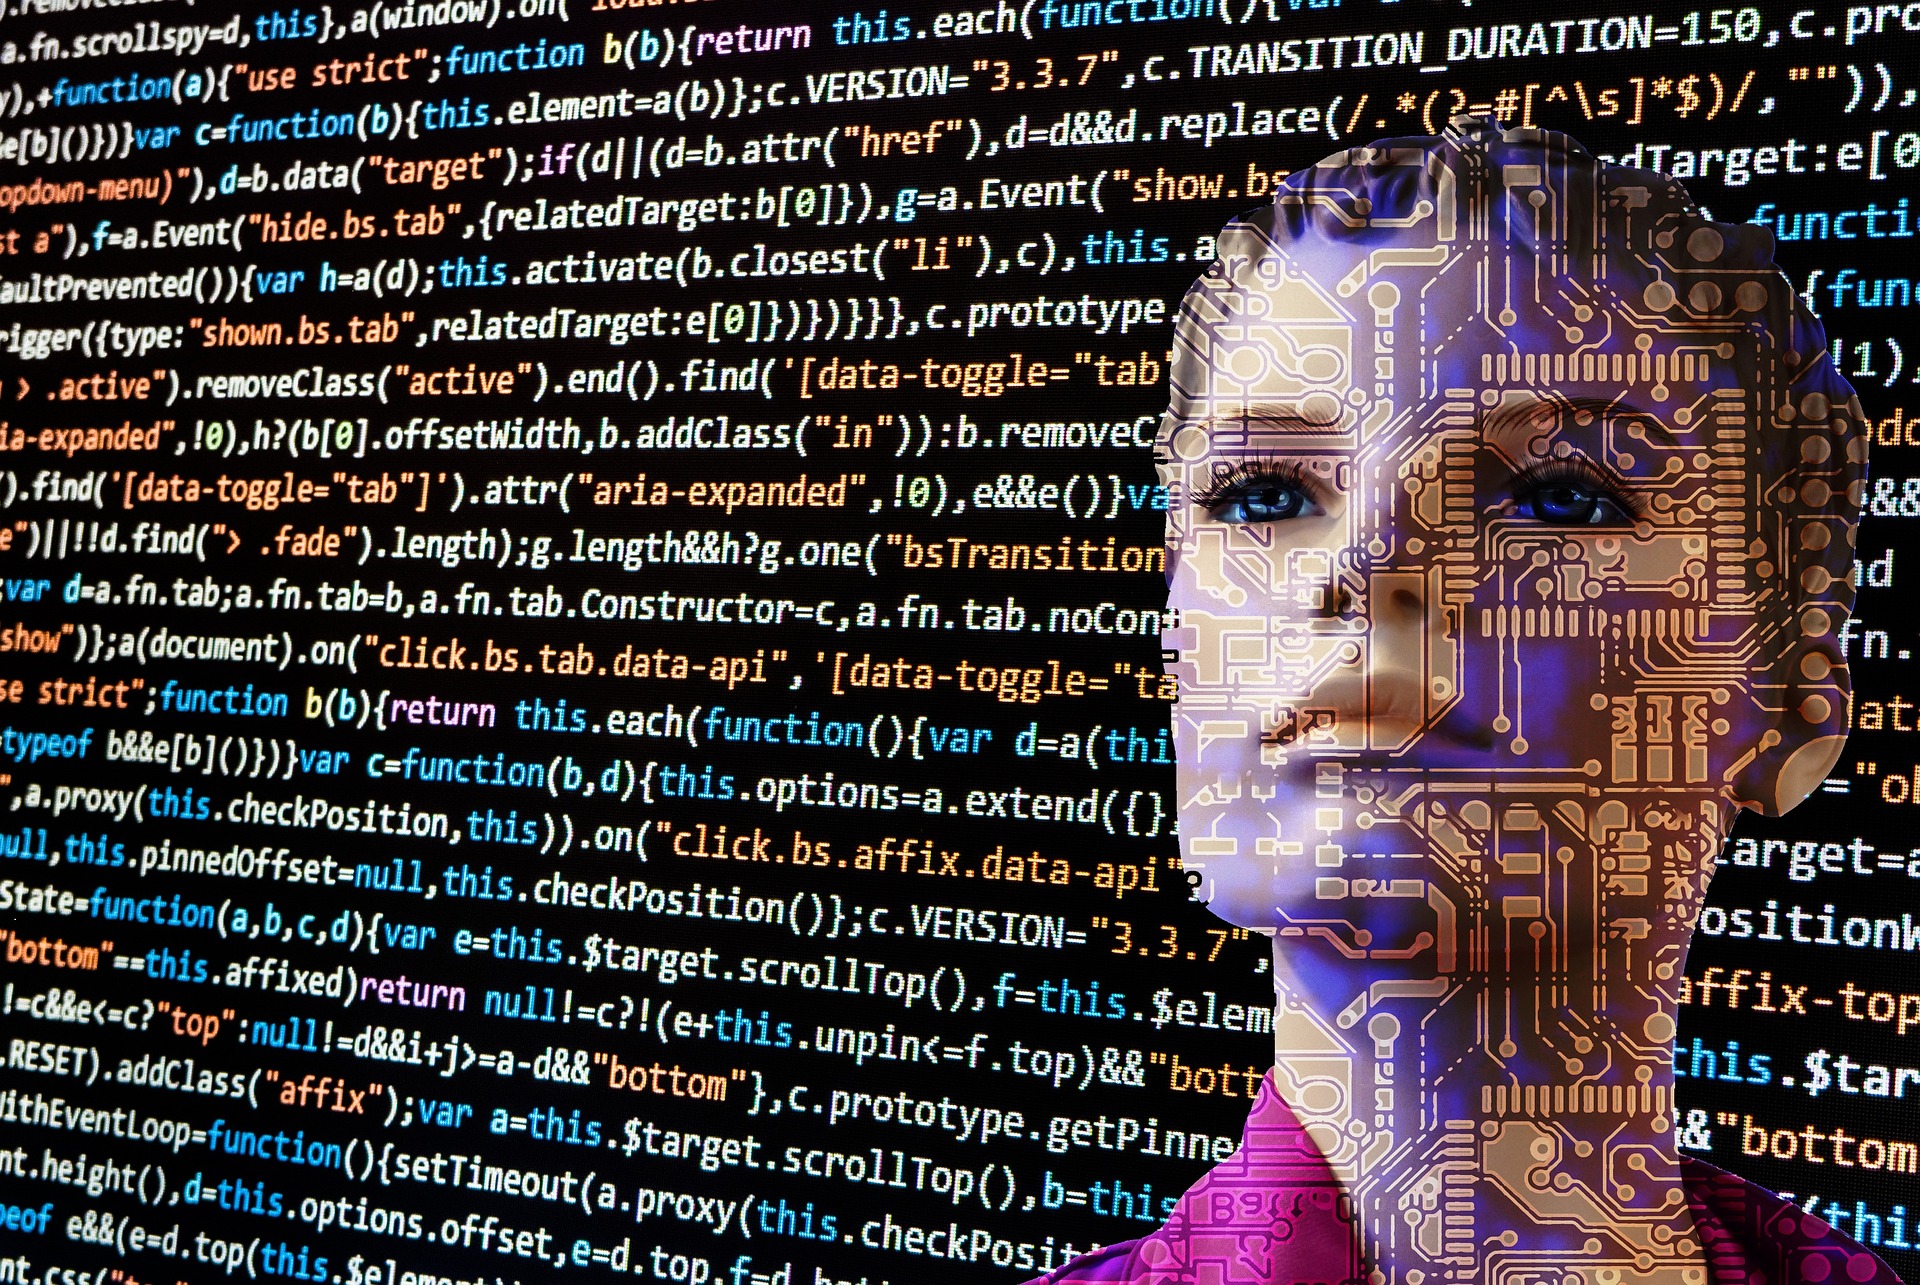 ¿Habrá trabajos que desaparecerán por la inteligencia artificial?